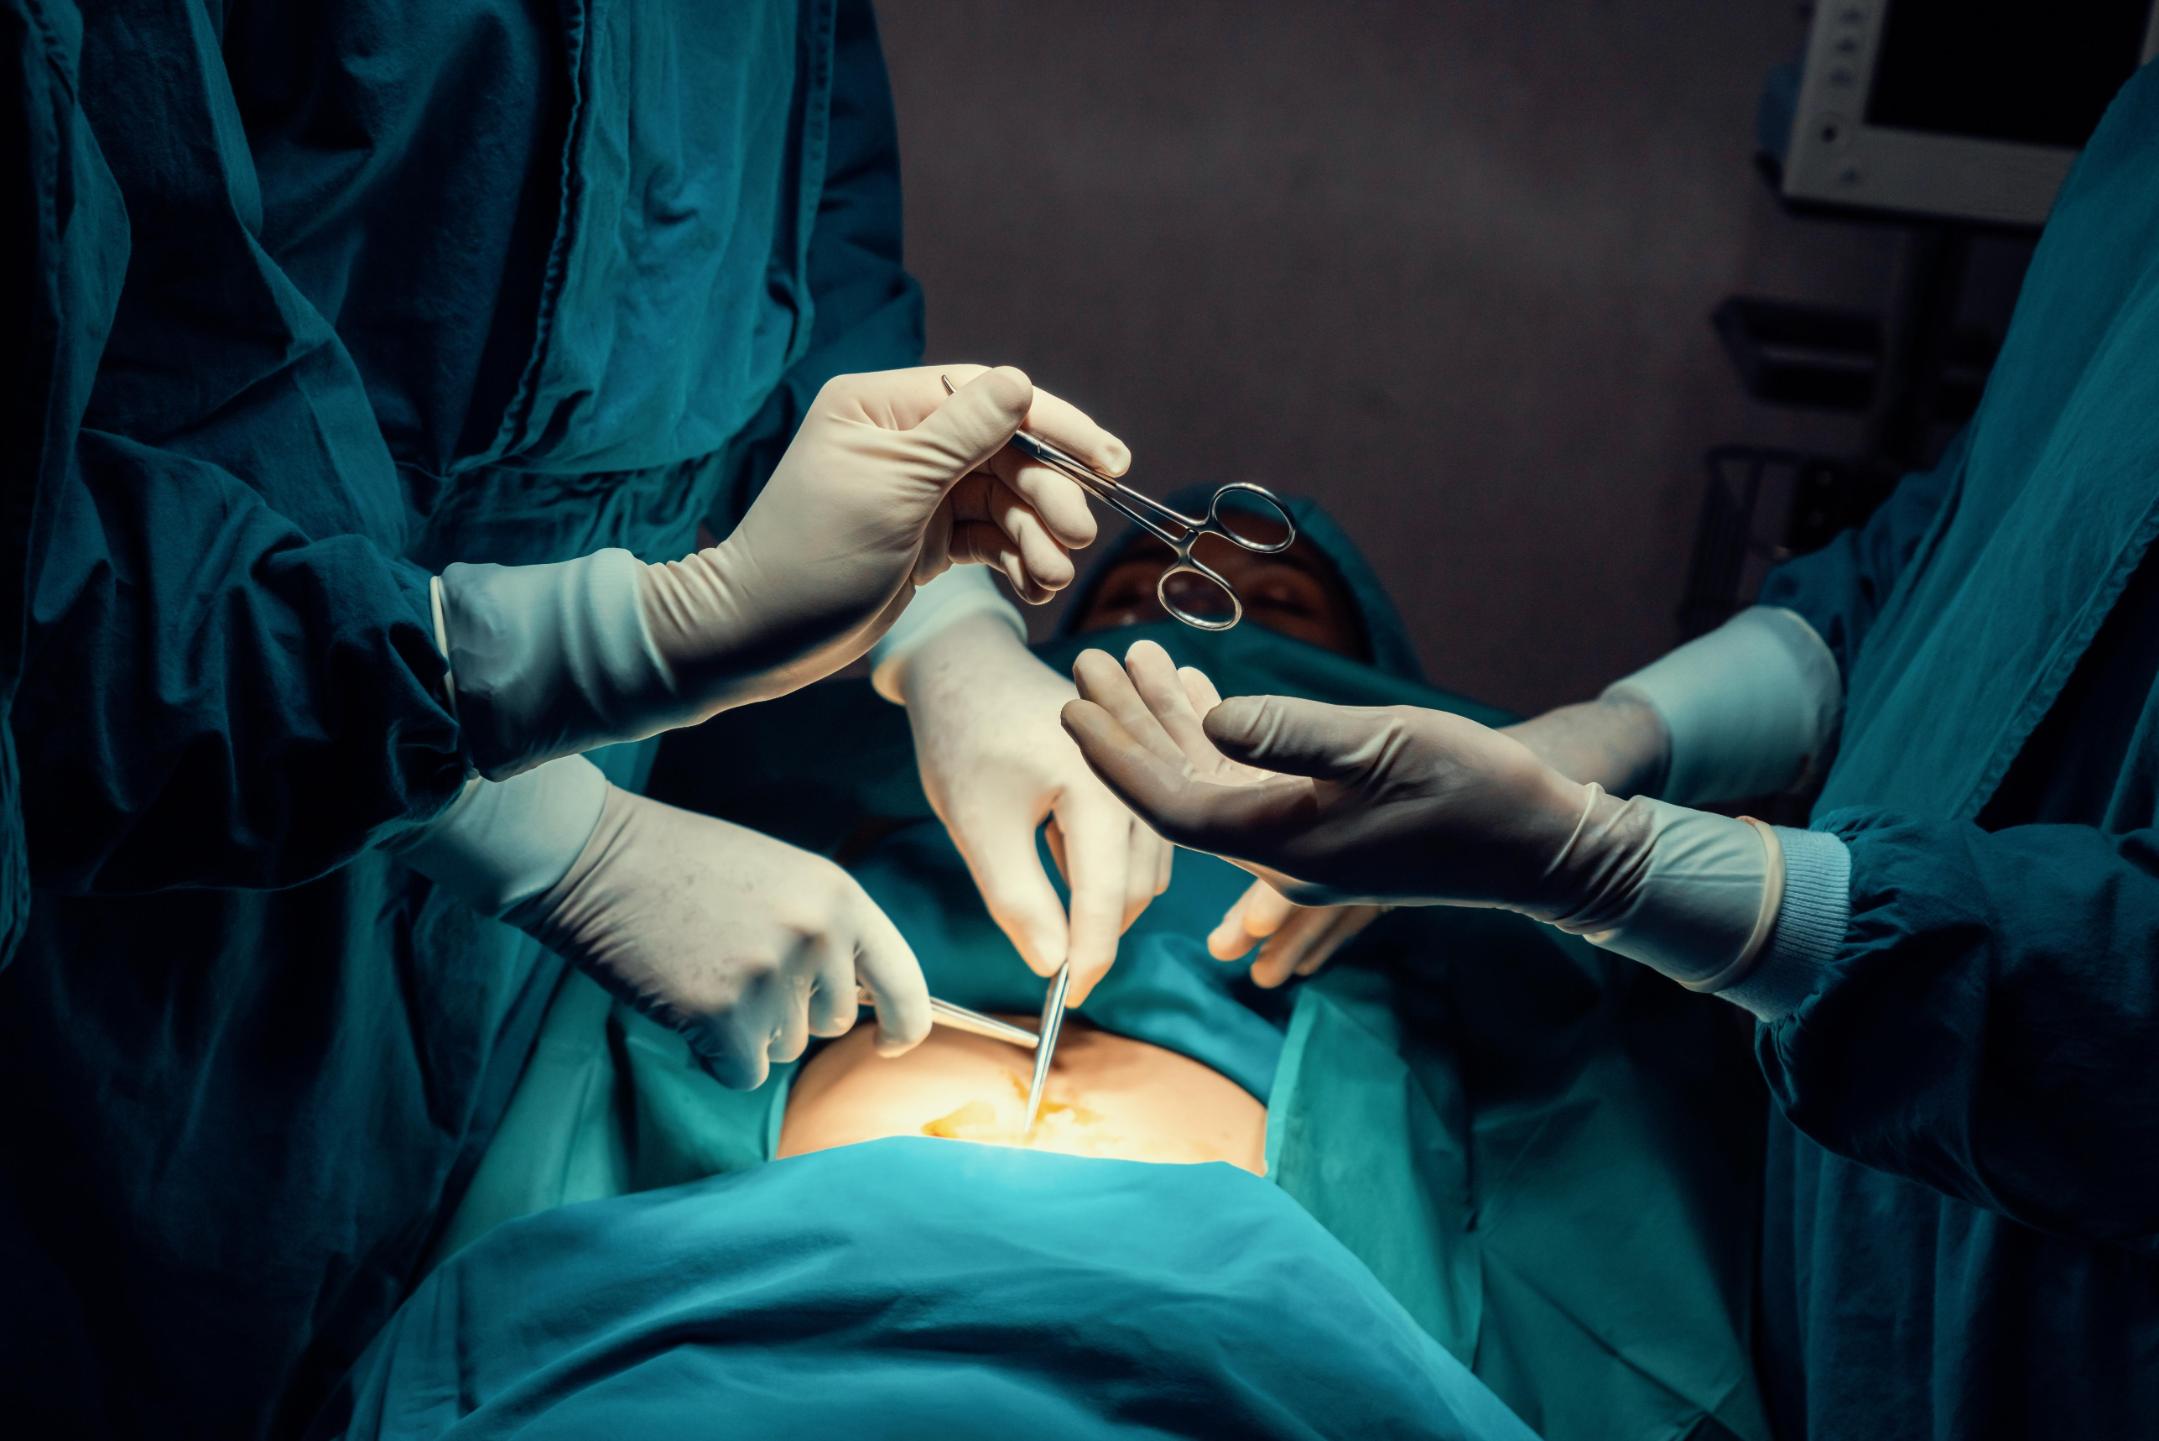 Cuáles son las cirugías estéticas más populares en el mundo? - CNN Video